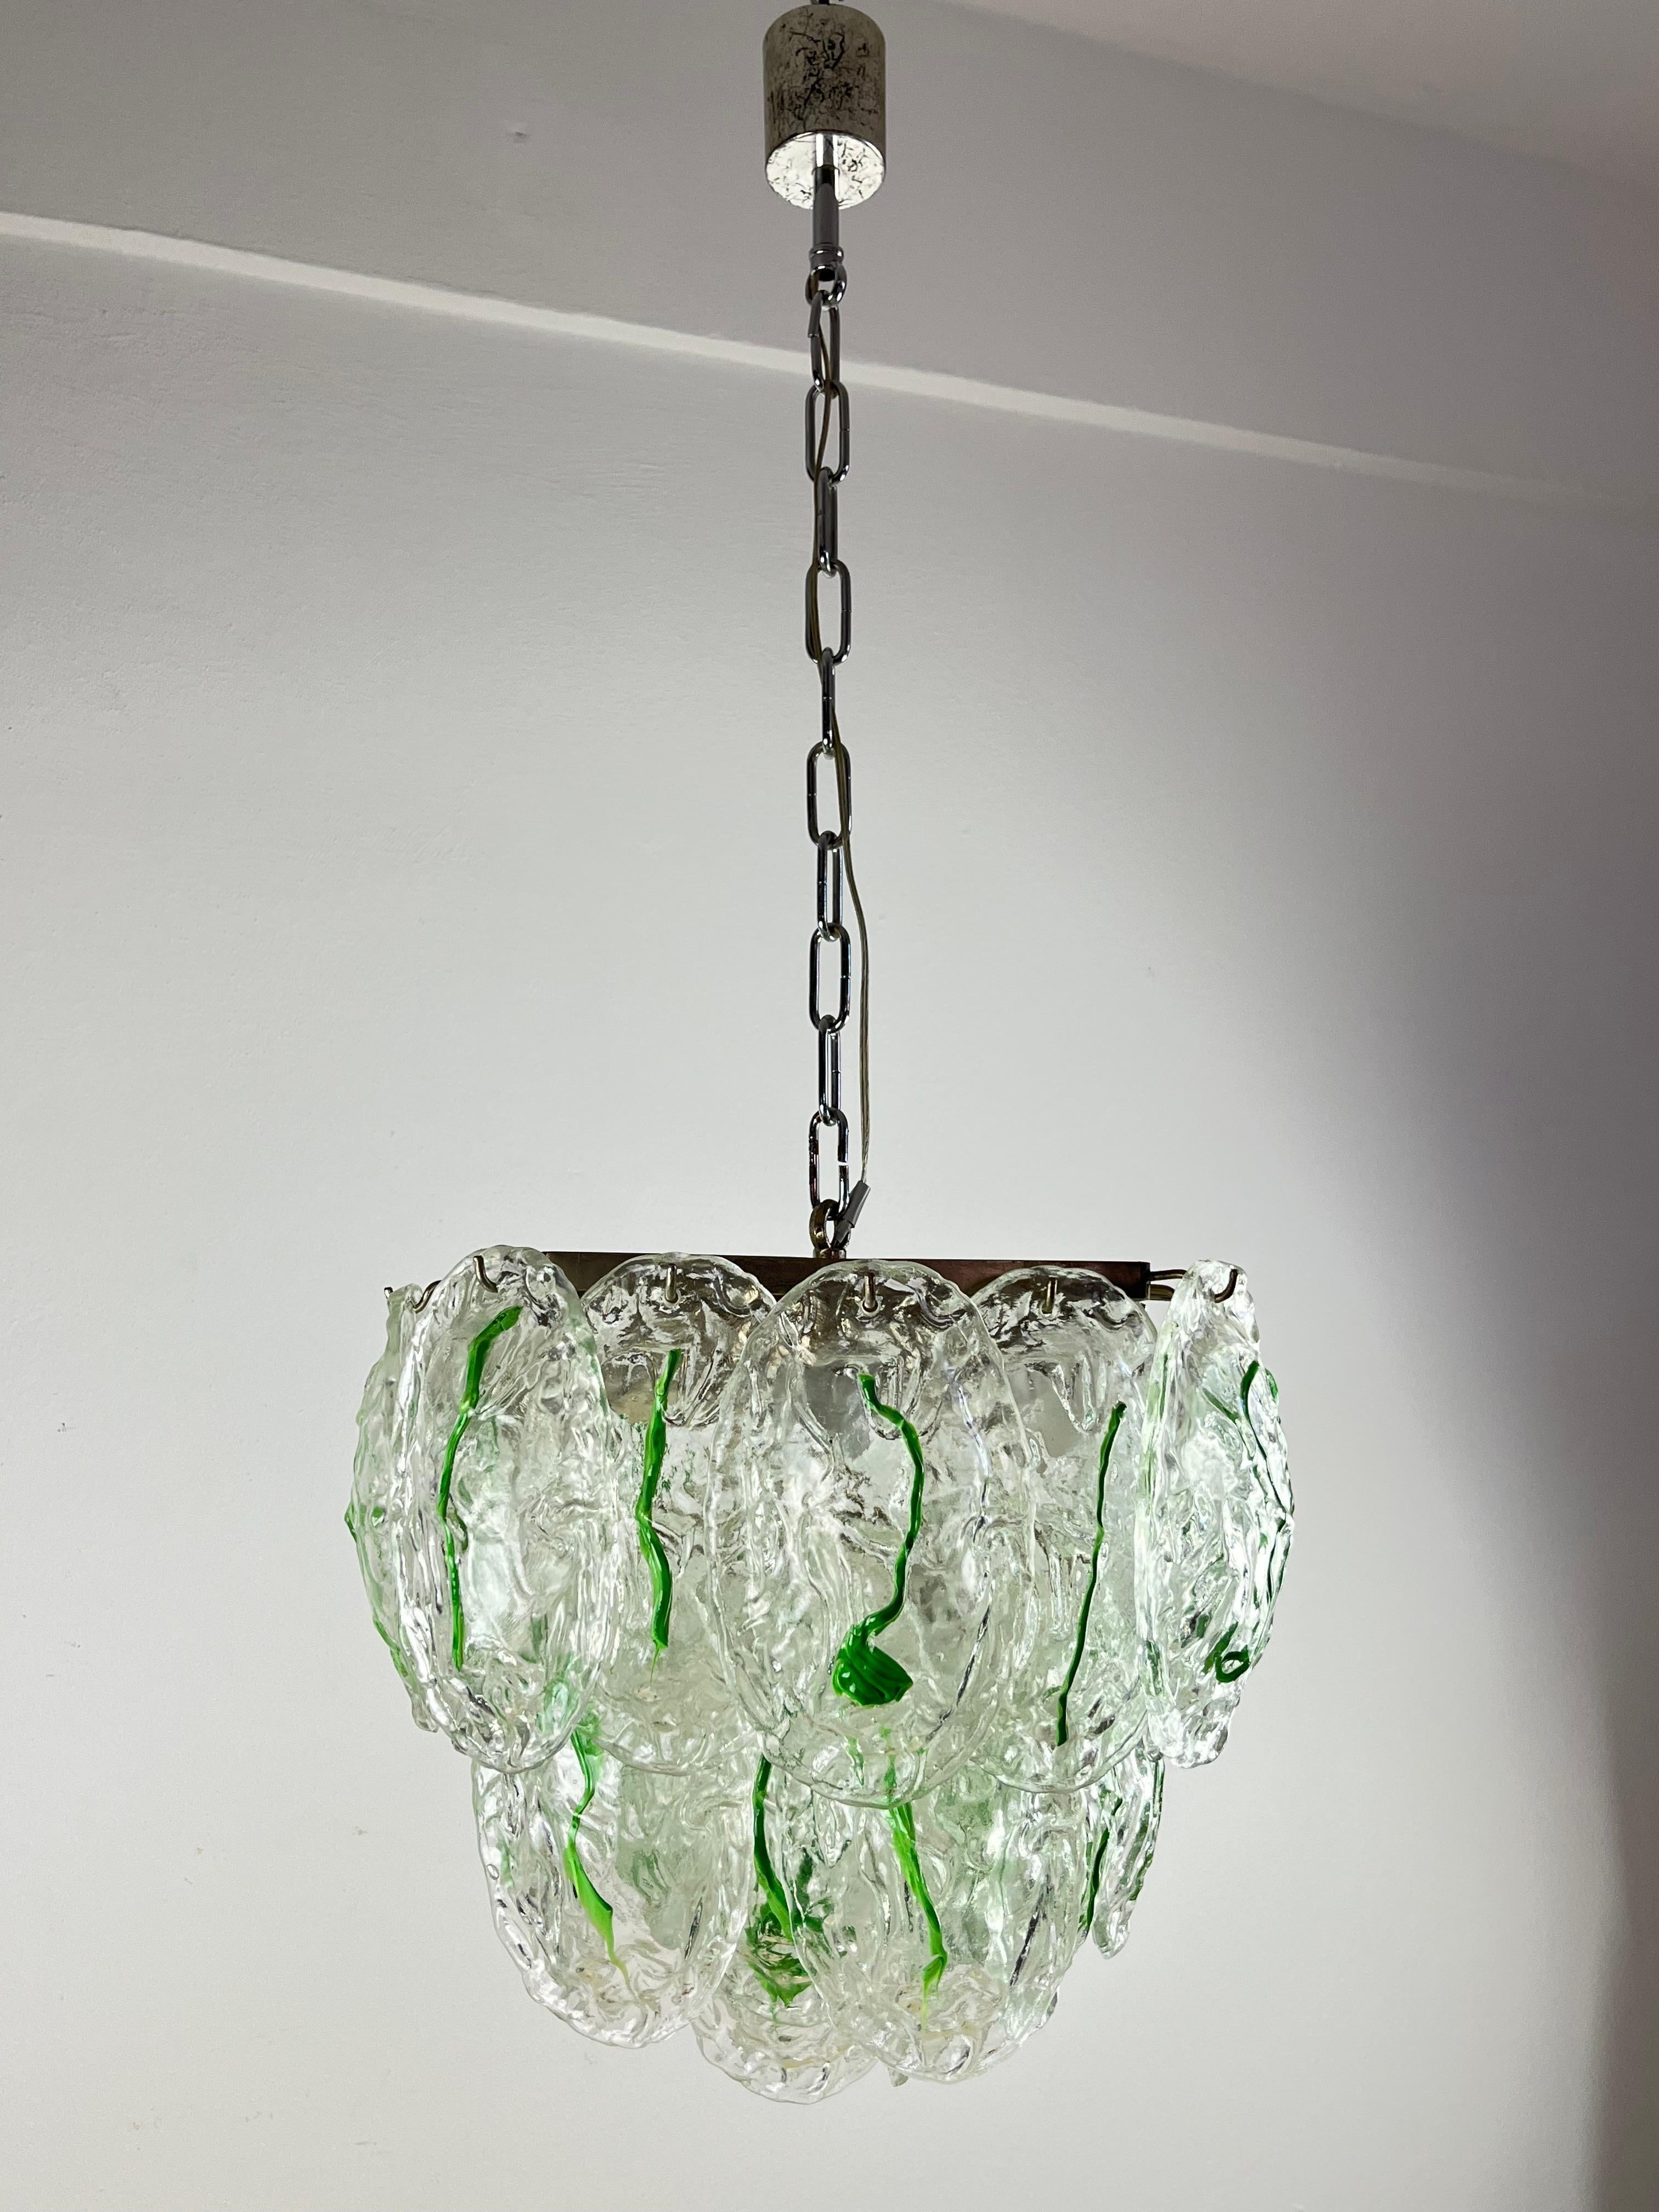 Lustre à six lumières en verre de Murano par Vistosi, Italie, années 1960
Trouvé dans l'appartement d'un architecte d'intérieur, il est intact et fonctionnel. Composé d'une structure métallique où sont suspendus trente-deux verres ovales. Très